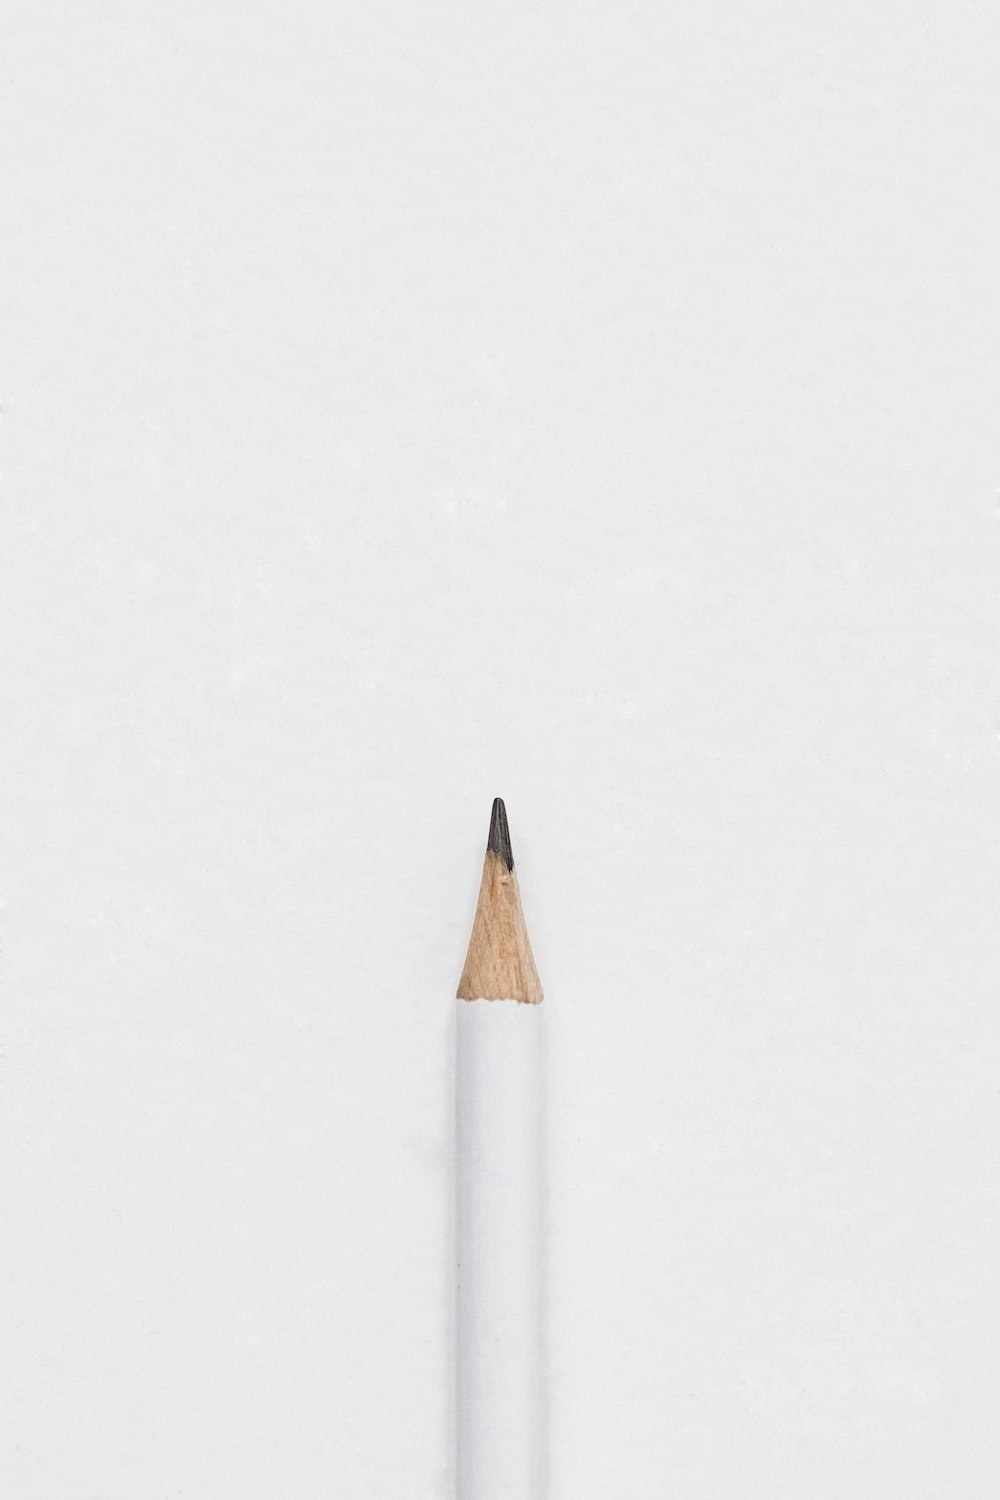 matita di piombo bianca sulla superficie